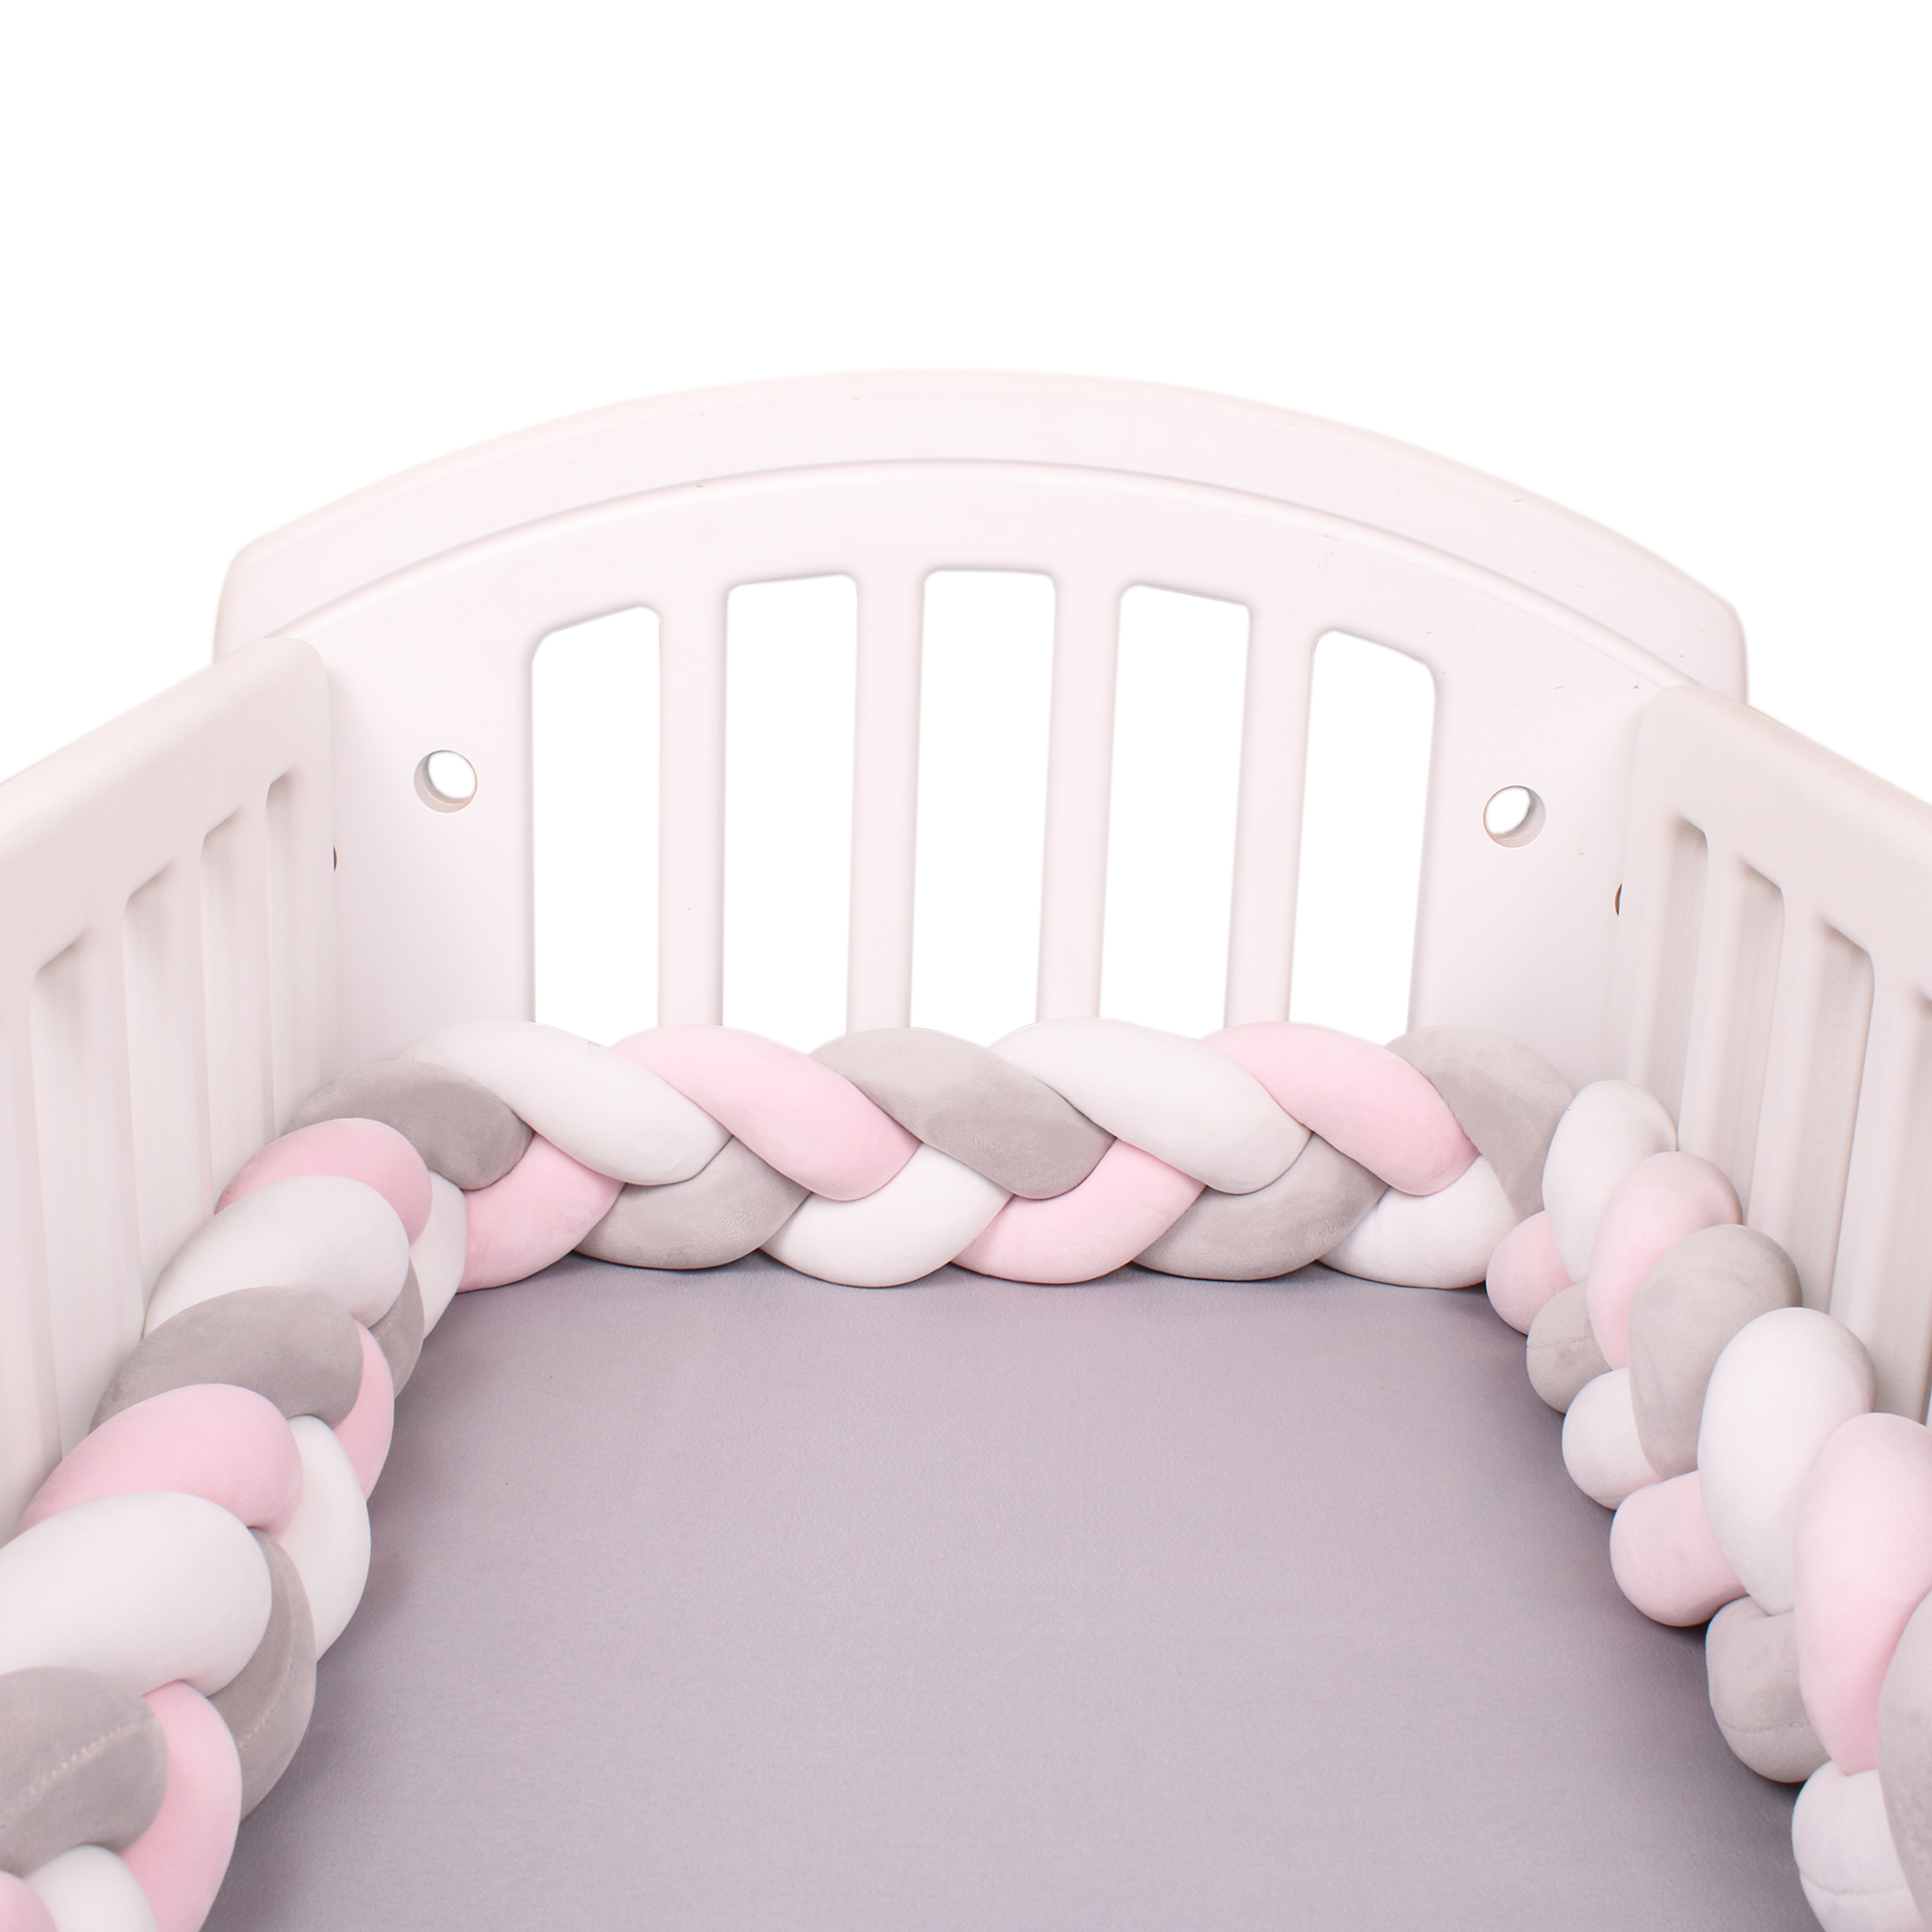 200cm decoración de habitación infantil almohada trenzada de nudo largo hecha a mano Parachoques de cama para bebé recién nacido nudo nórdico 